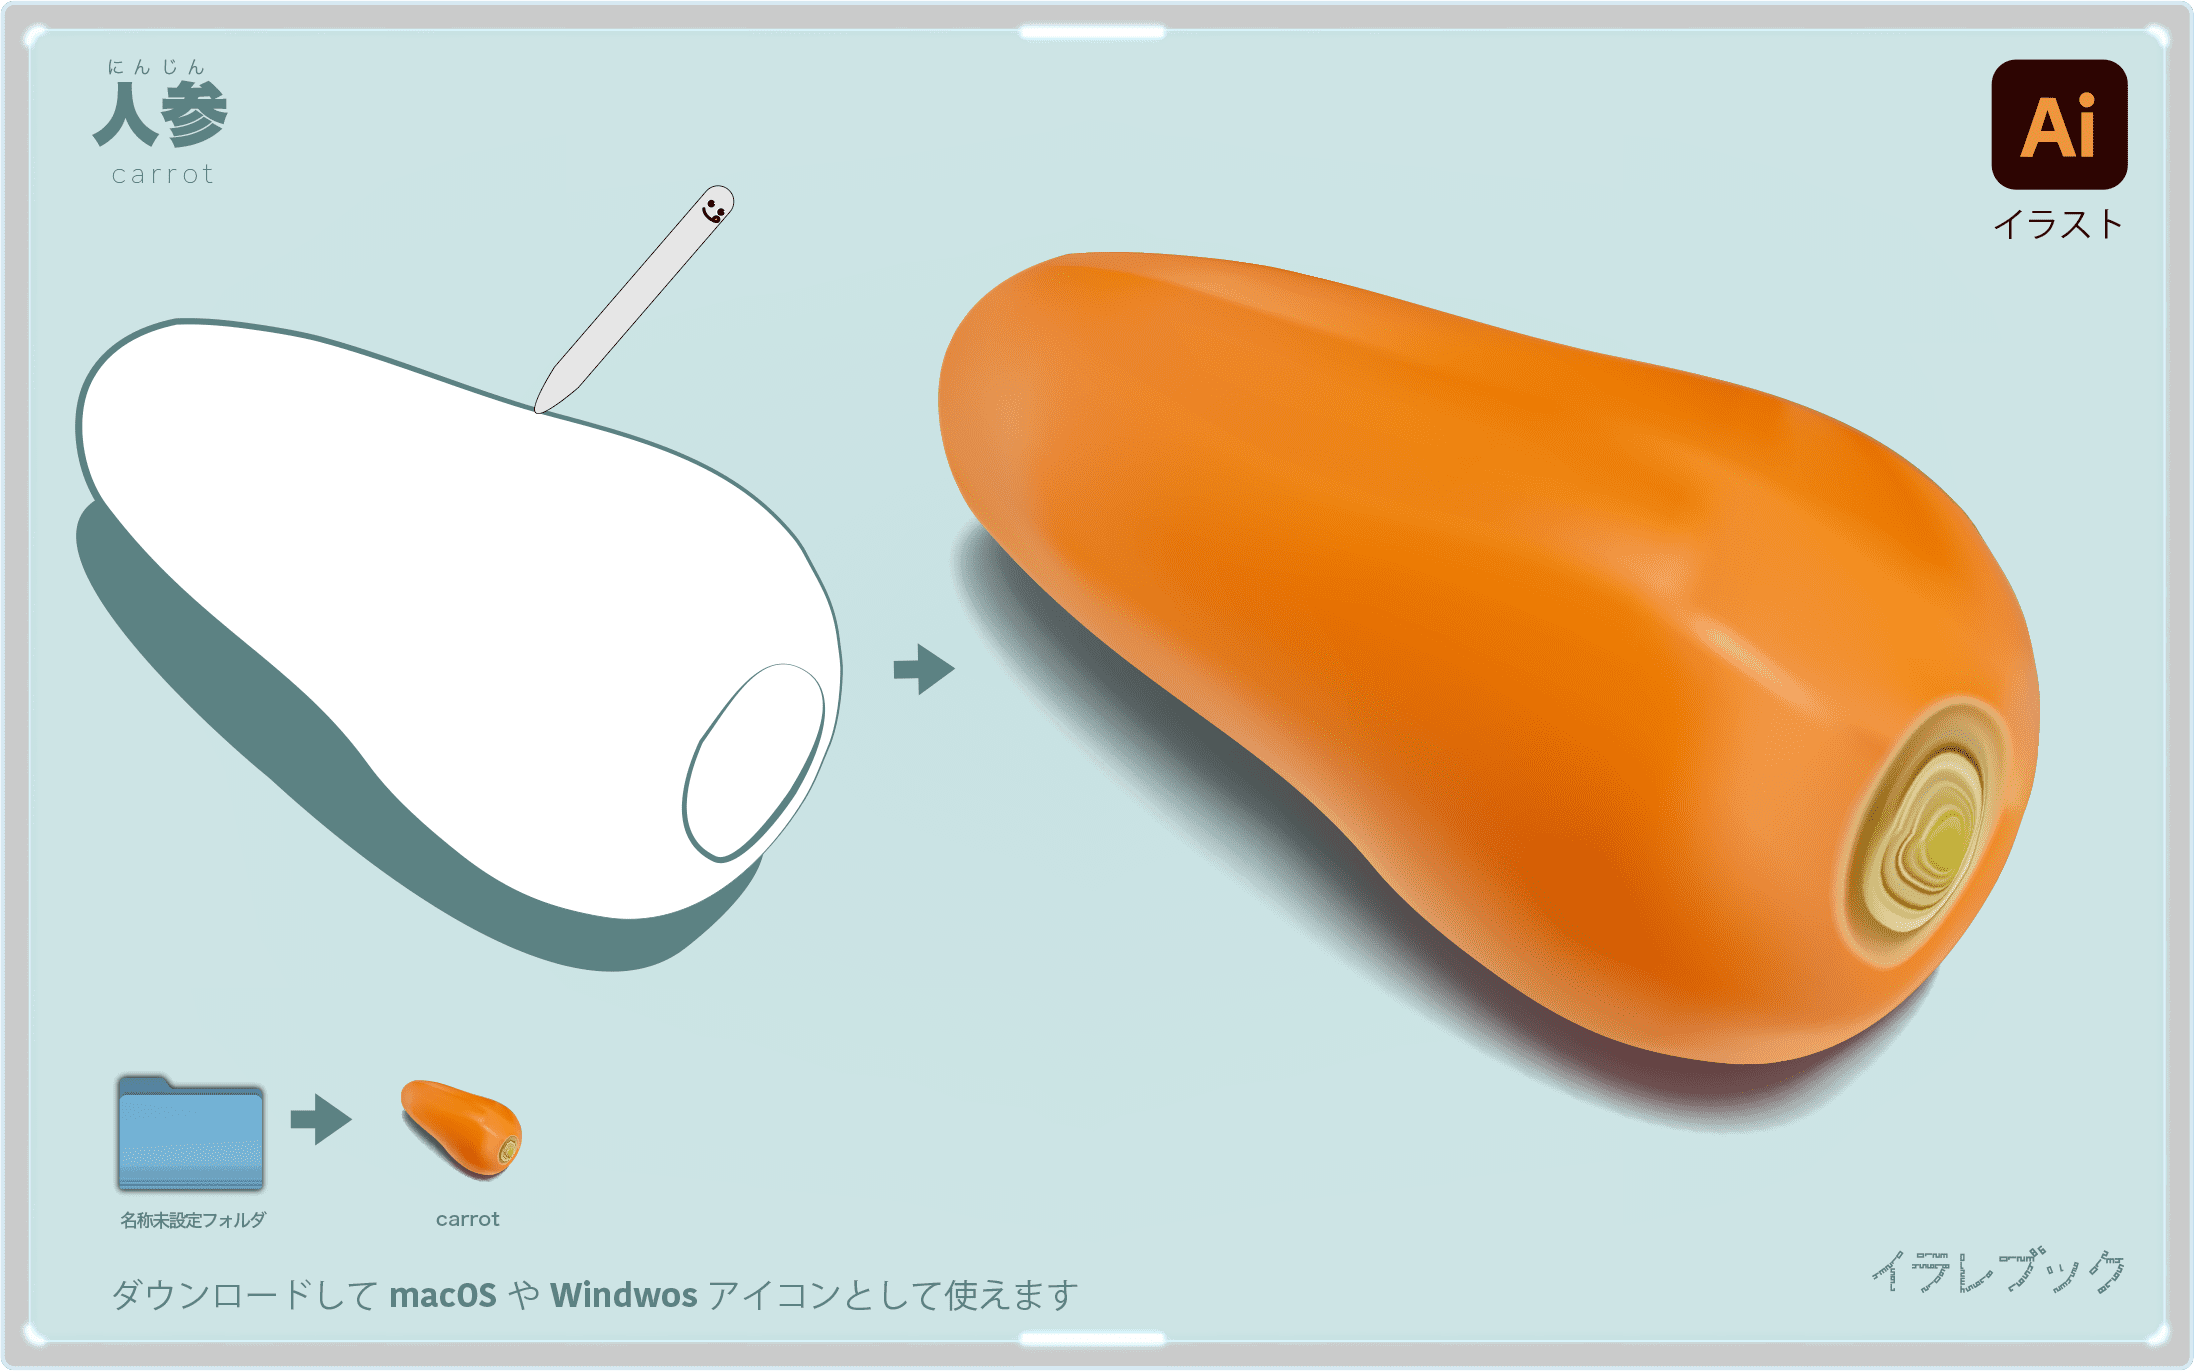 にんじんしりしり 人参の栄養や選び方を徹底的に詳しくみよう Carrot